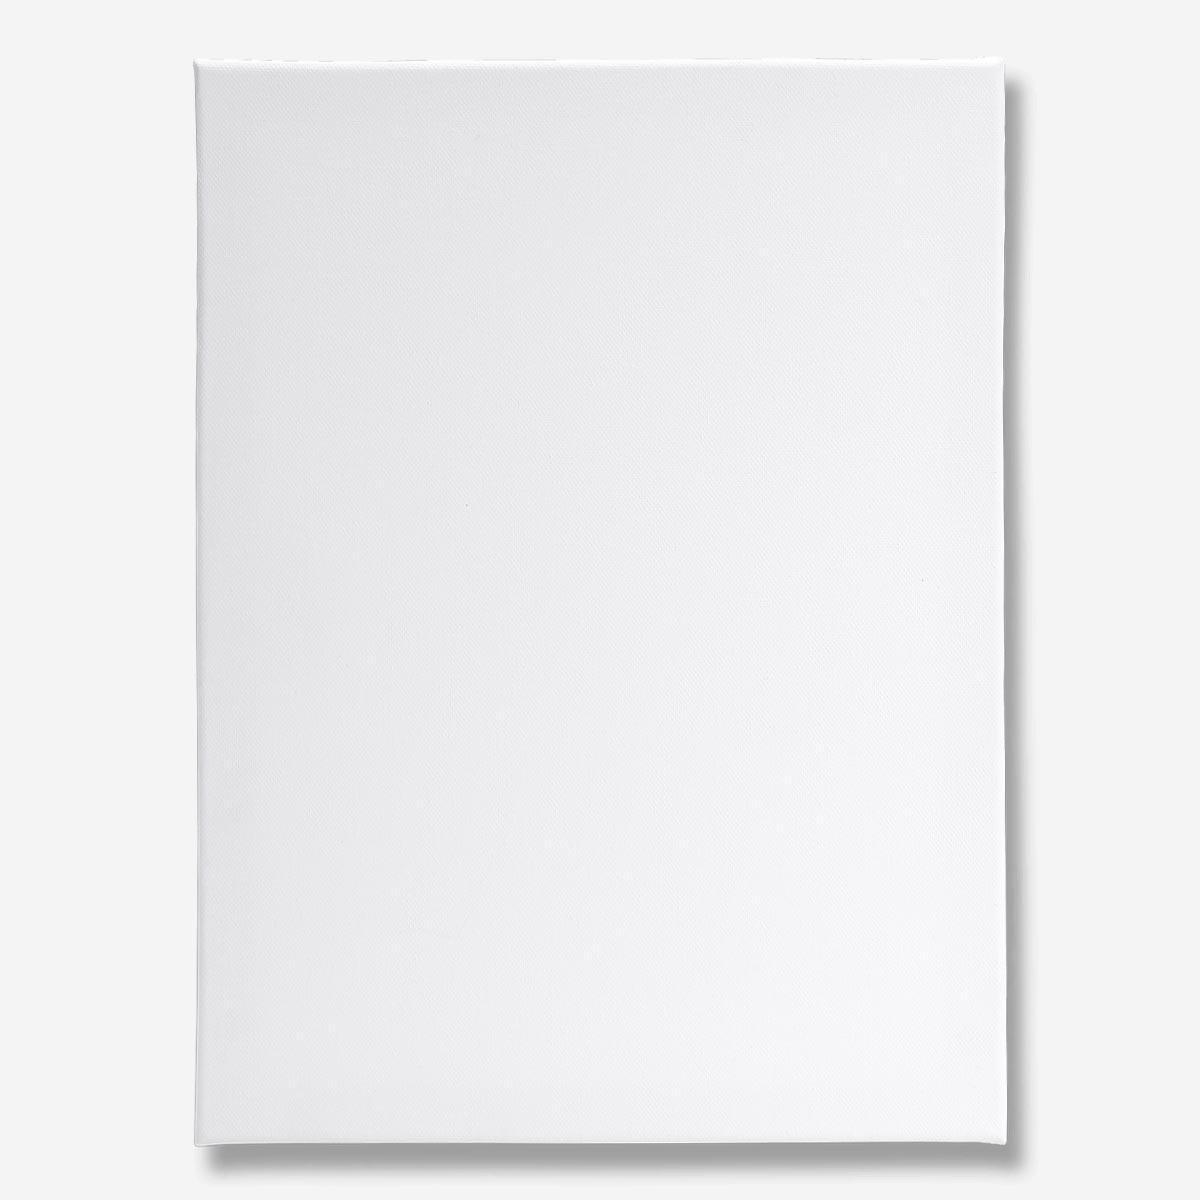 White artist canvas. 30 x 40 cm